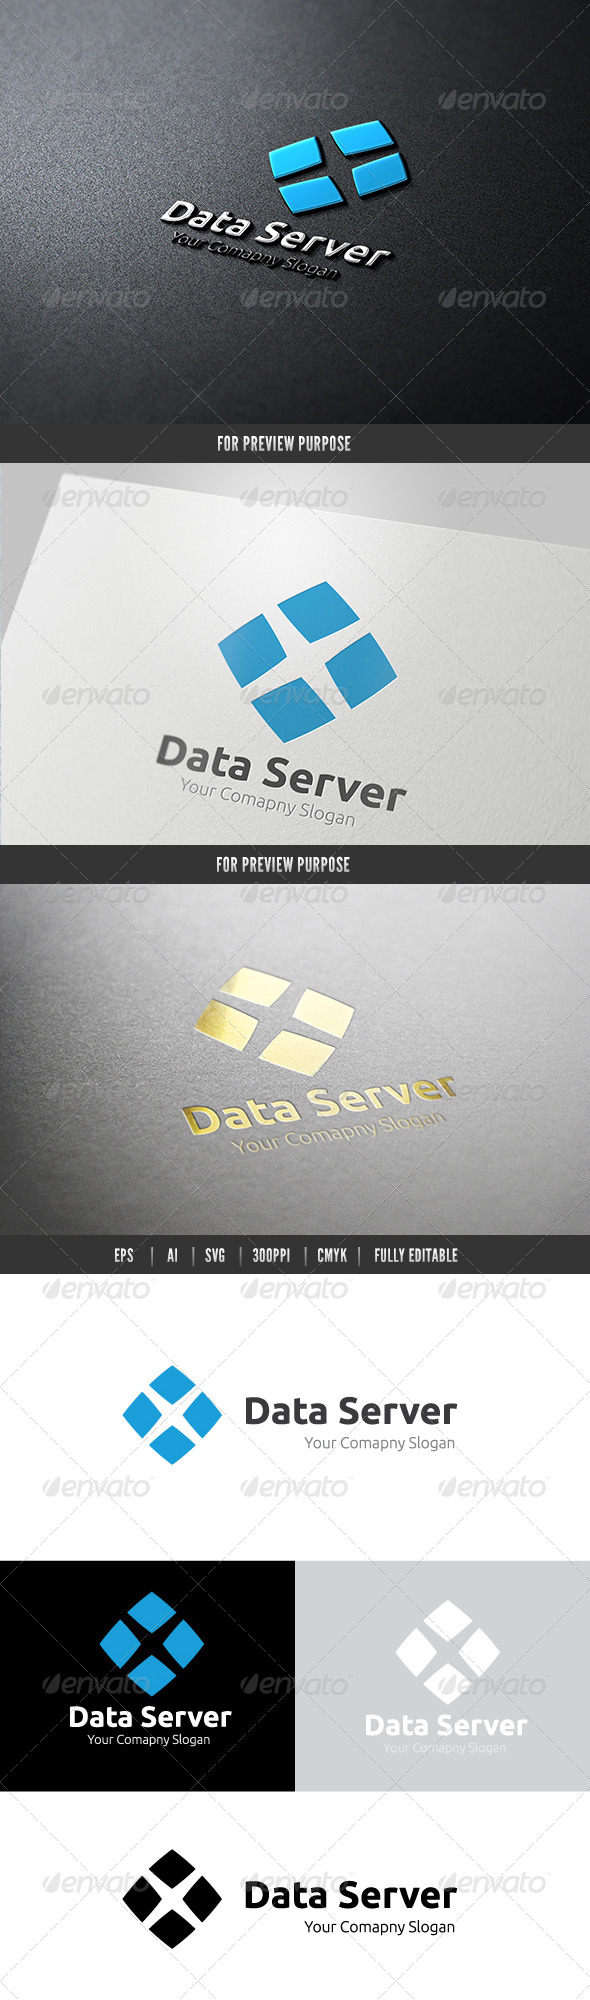 Data Server